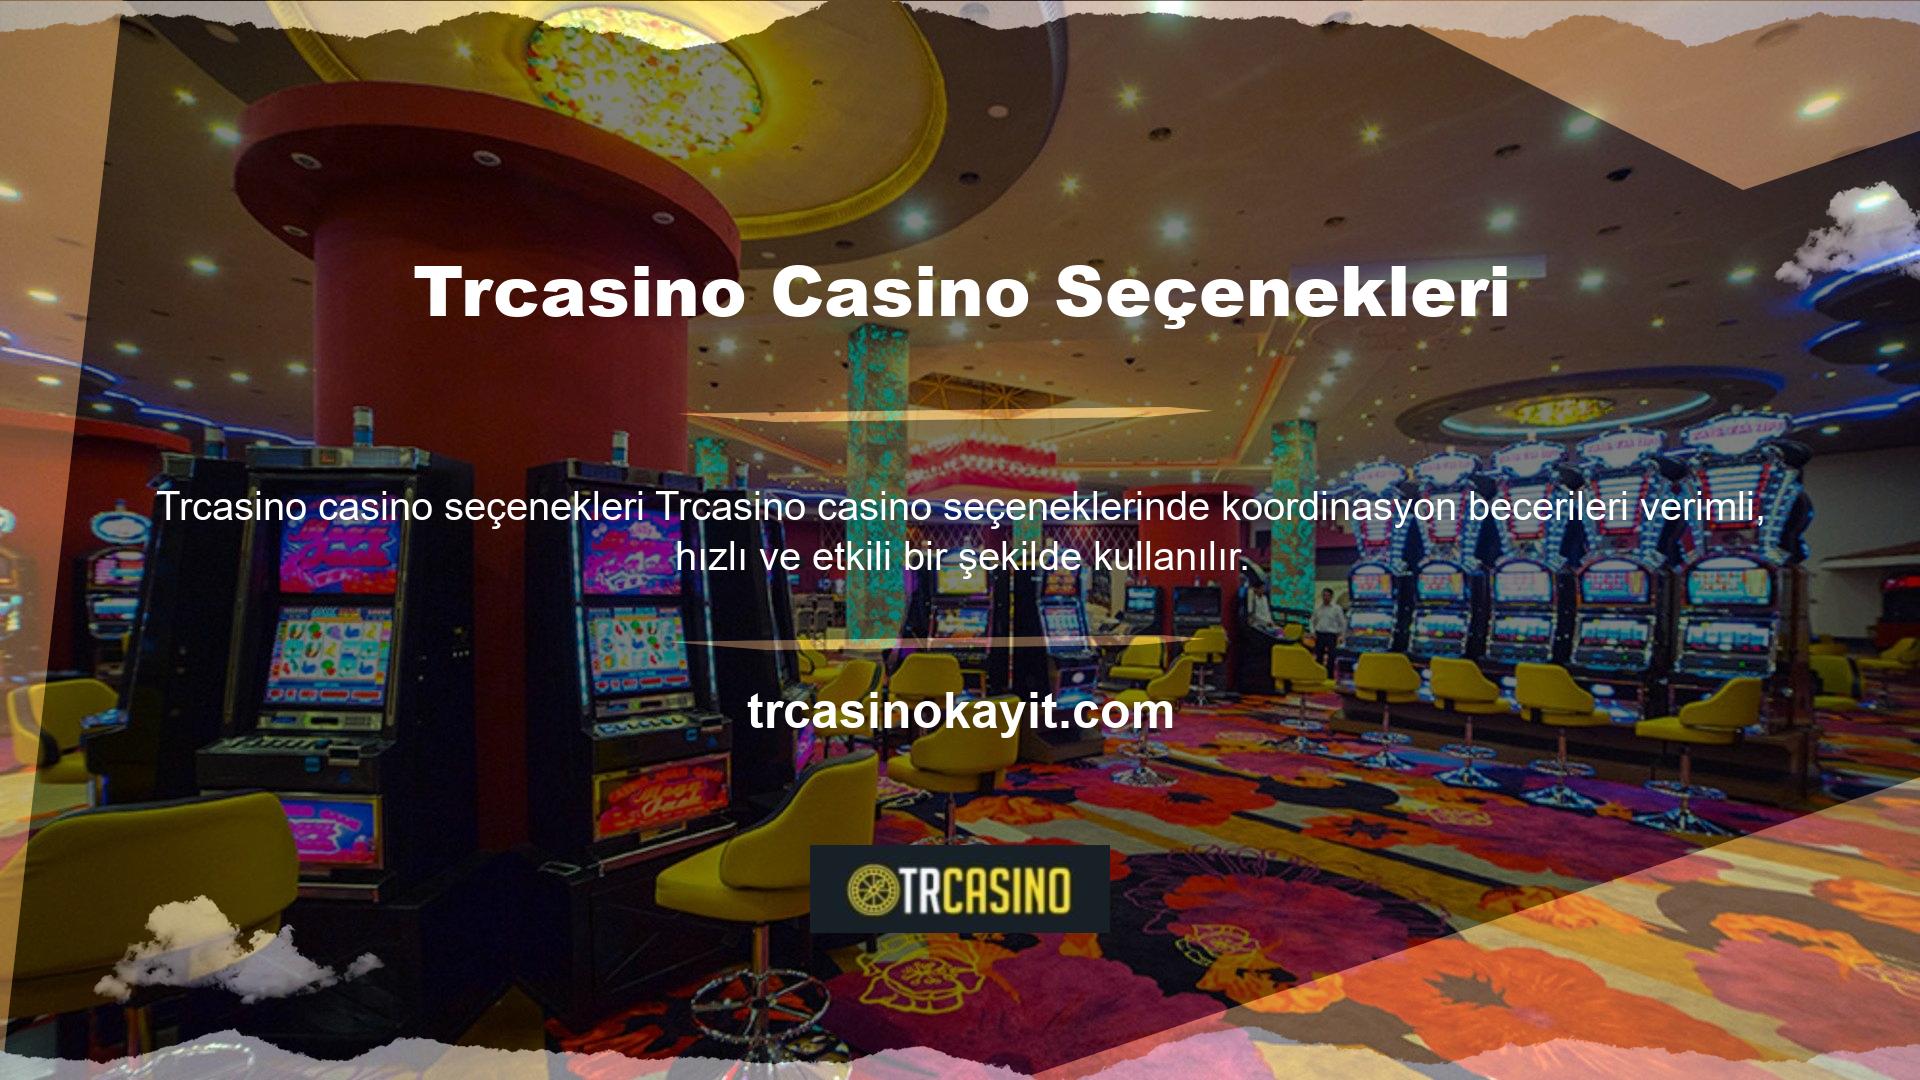 Güçlü, verimli ve donanımlı bir zihniyete sahip olarak Trcasino casino alternatiflerini arzu ettiğiniz her an bu siteden yararlanabilirsiniz